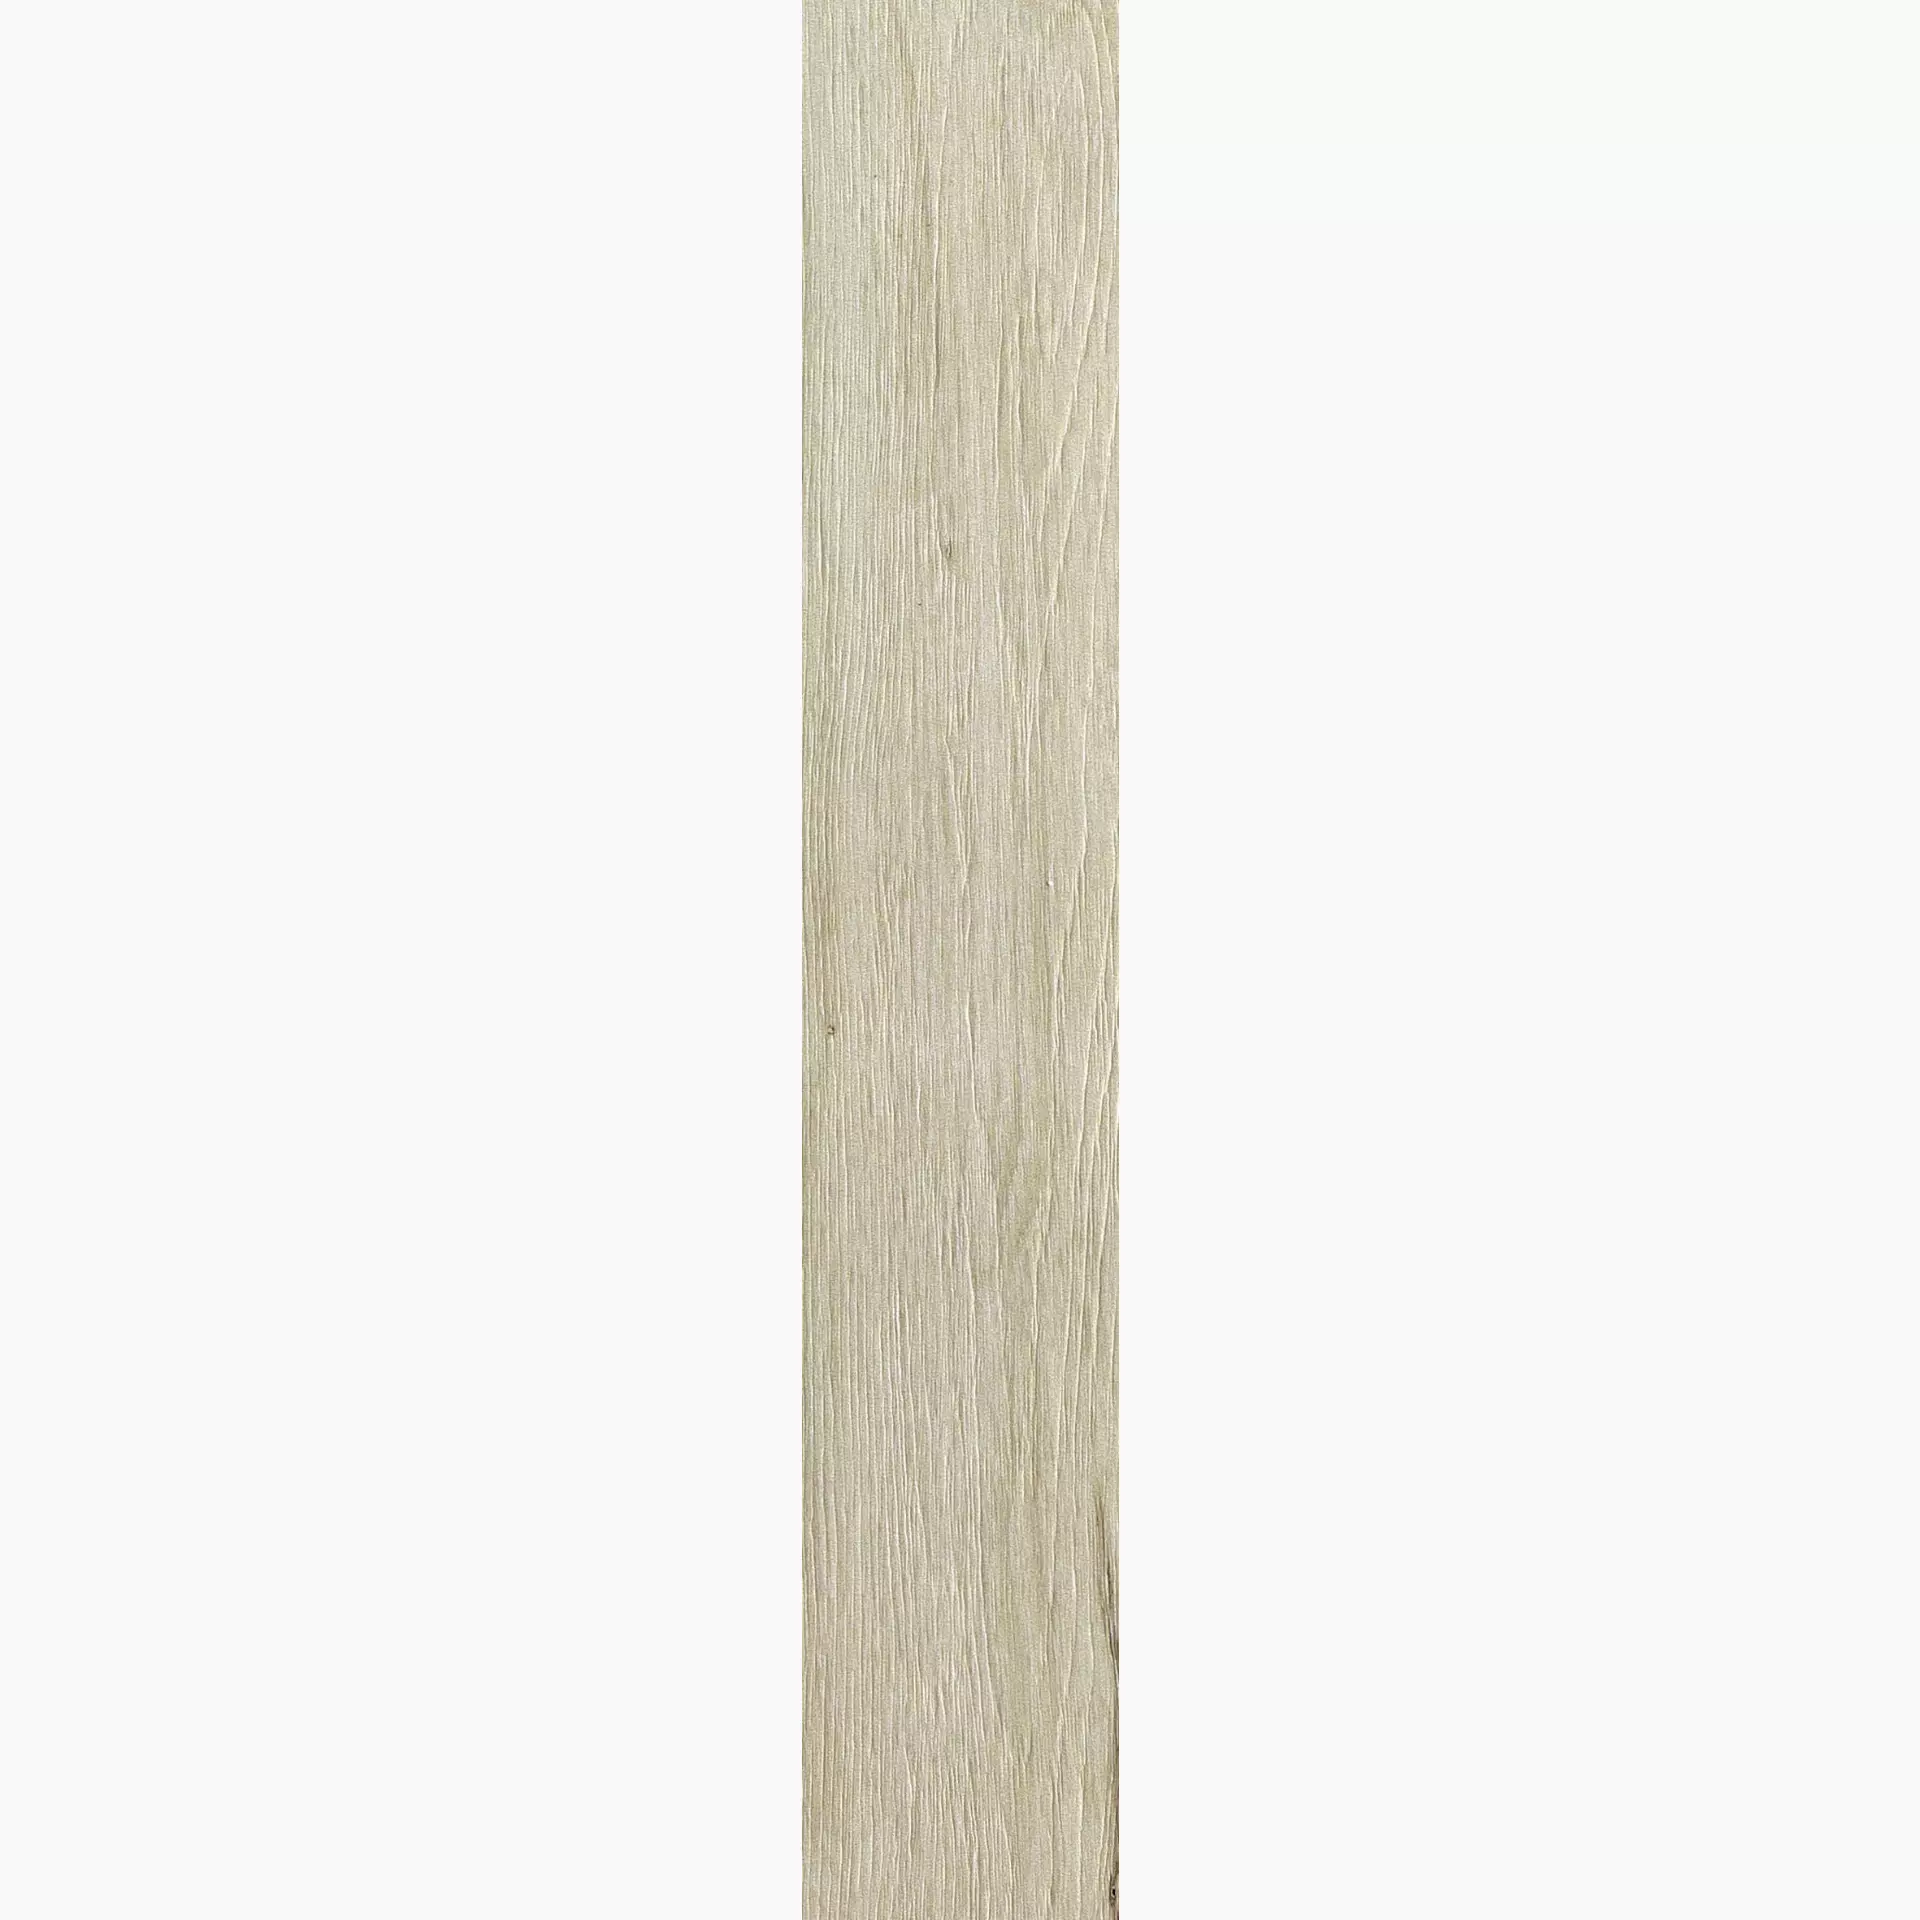 Florim Planches De Rex Amande Naturale – Matt Amande 755608 matt natur 20x120cm rektifiziert 9mm